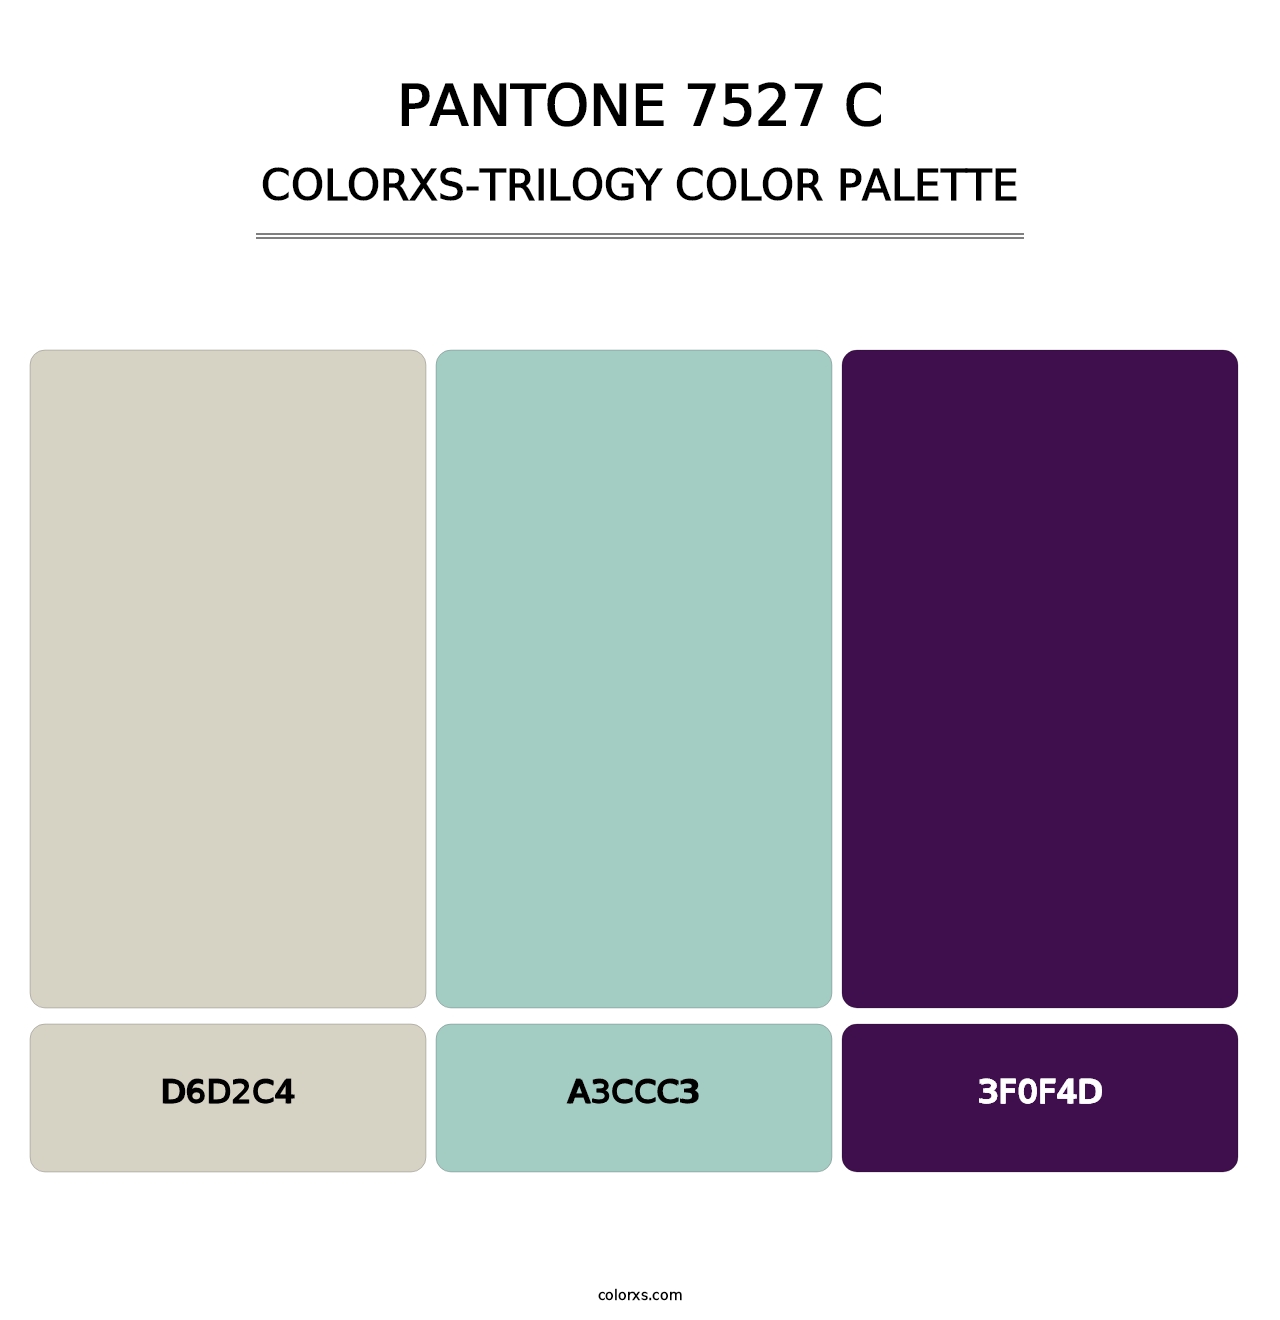 PANTONE 7527 C - Colorxs Trilogy Palette